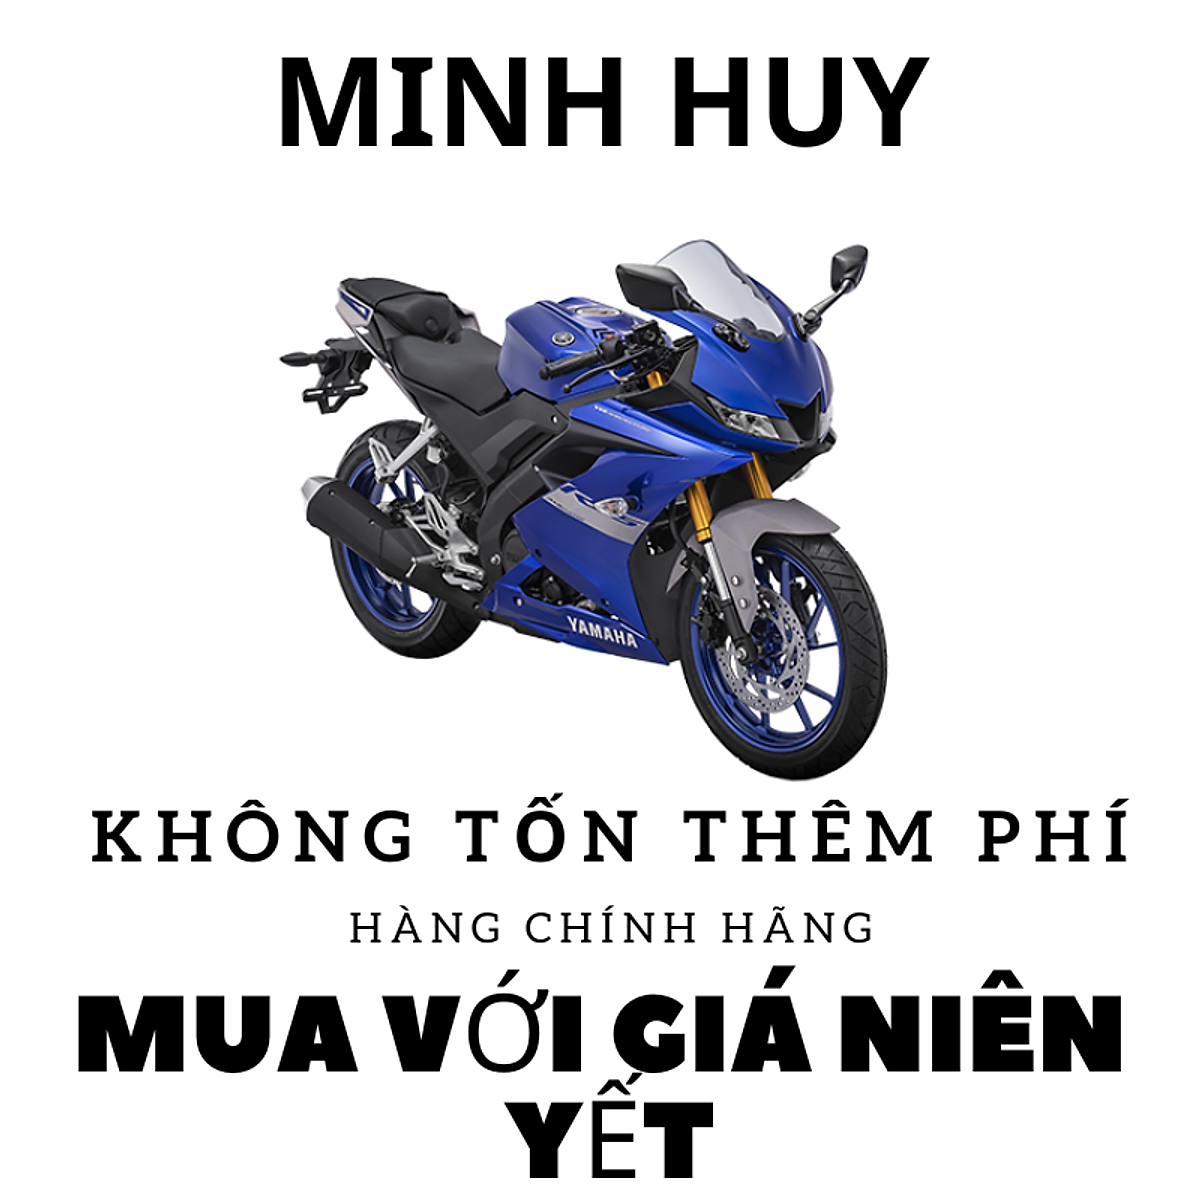 Moto visitor 175cc bstp chính chủ sang tên    Giá 445 triệu   0862140021  Xe Hơi Việt  Chợ Mua Bán Xe Ô Tô Xe Máy Xe Tải Xe Khách  Online